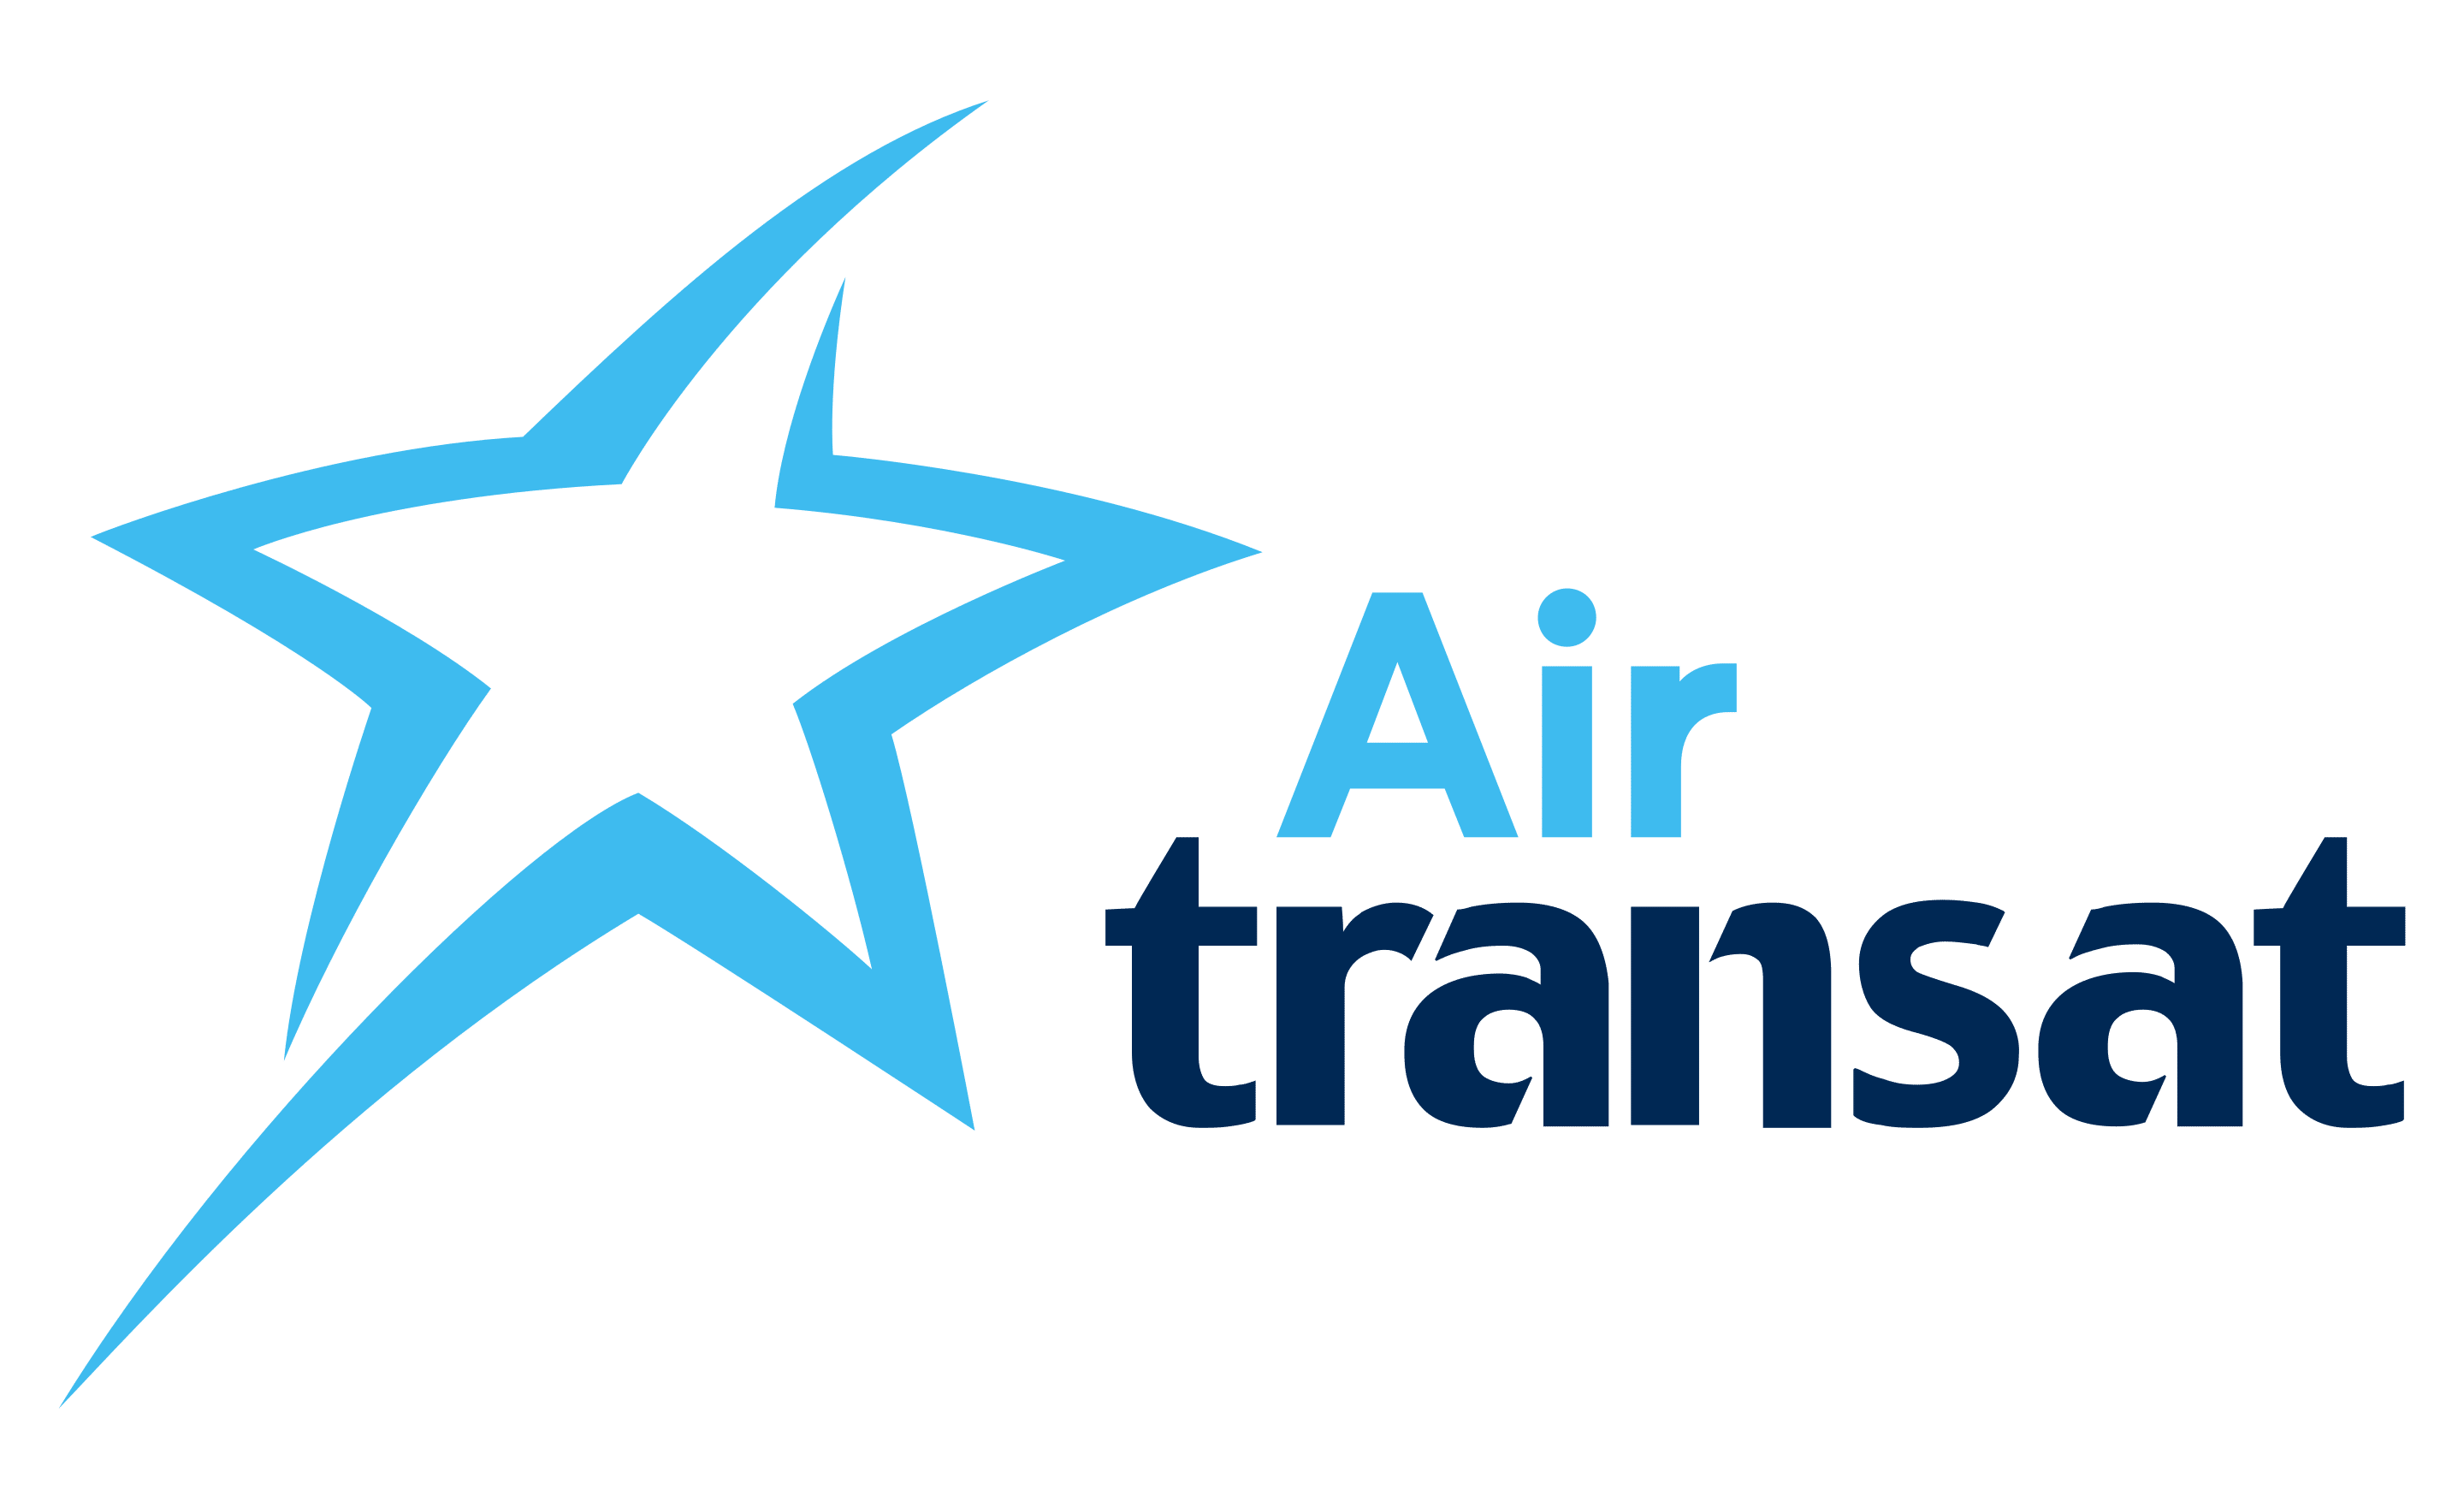 Air Tansat logo virtual tour